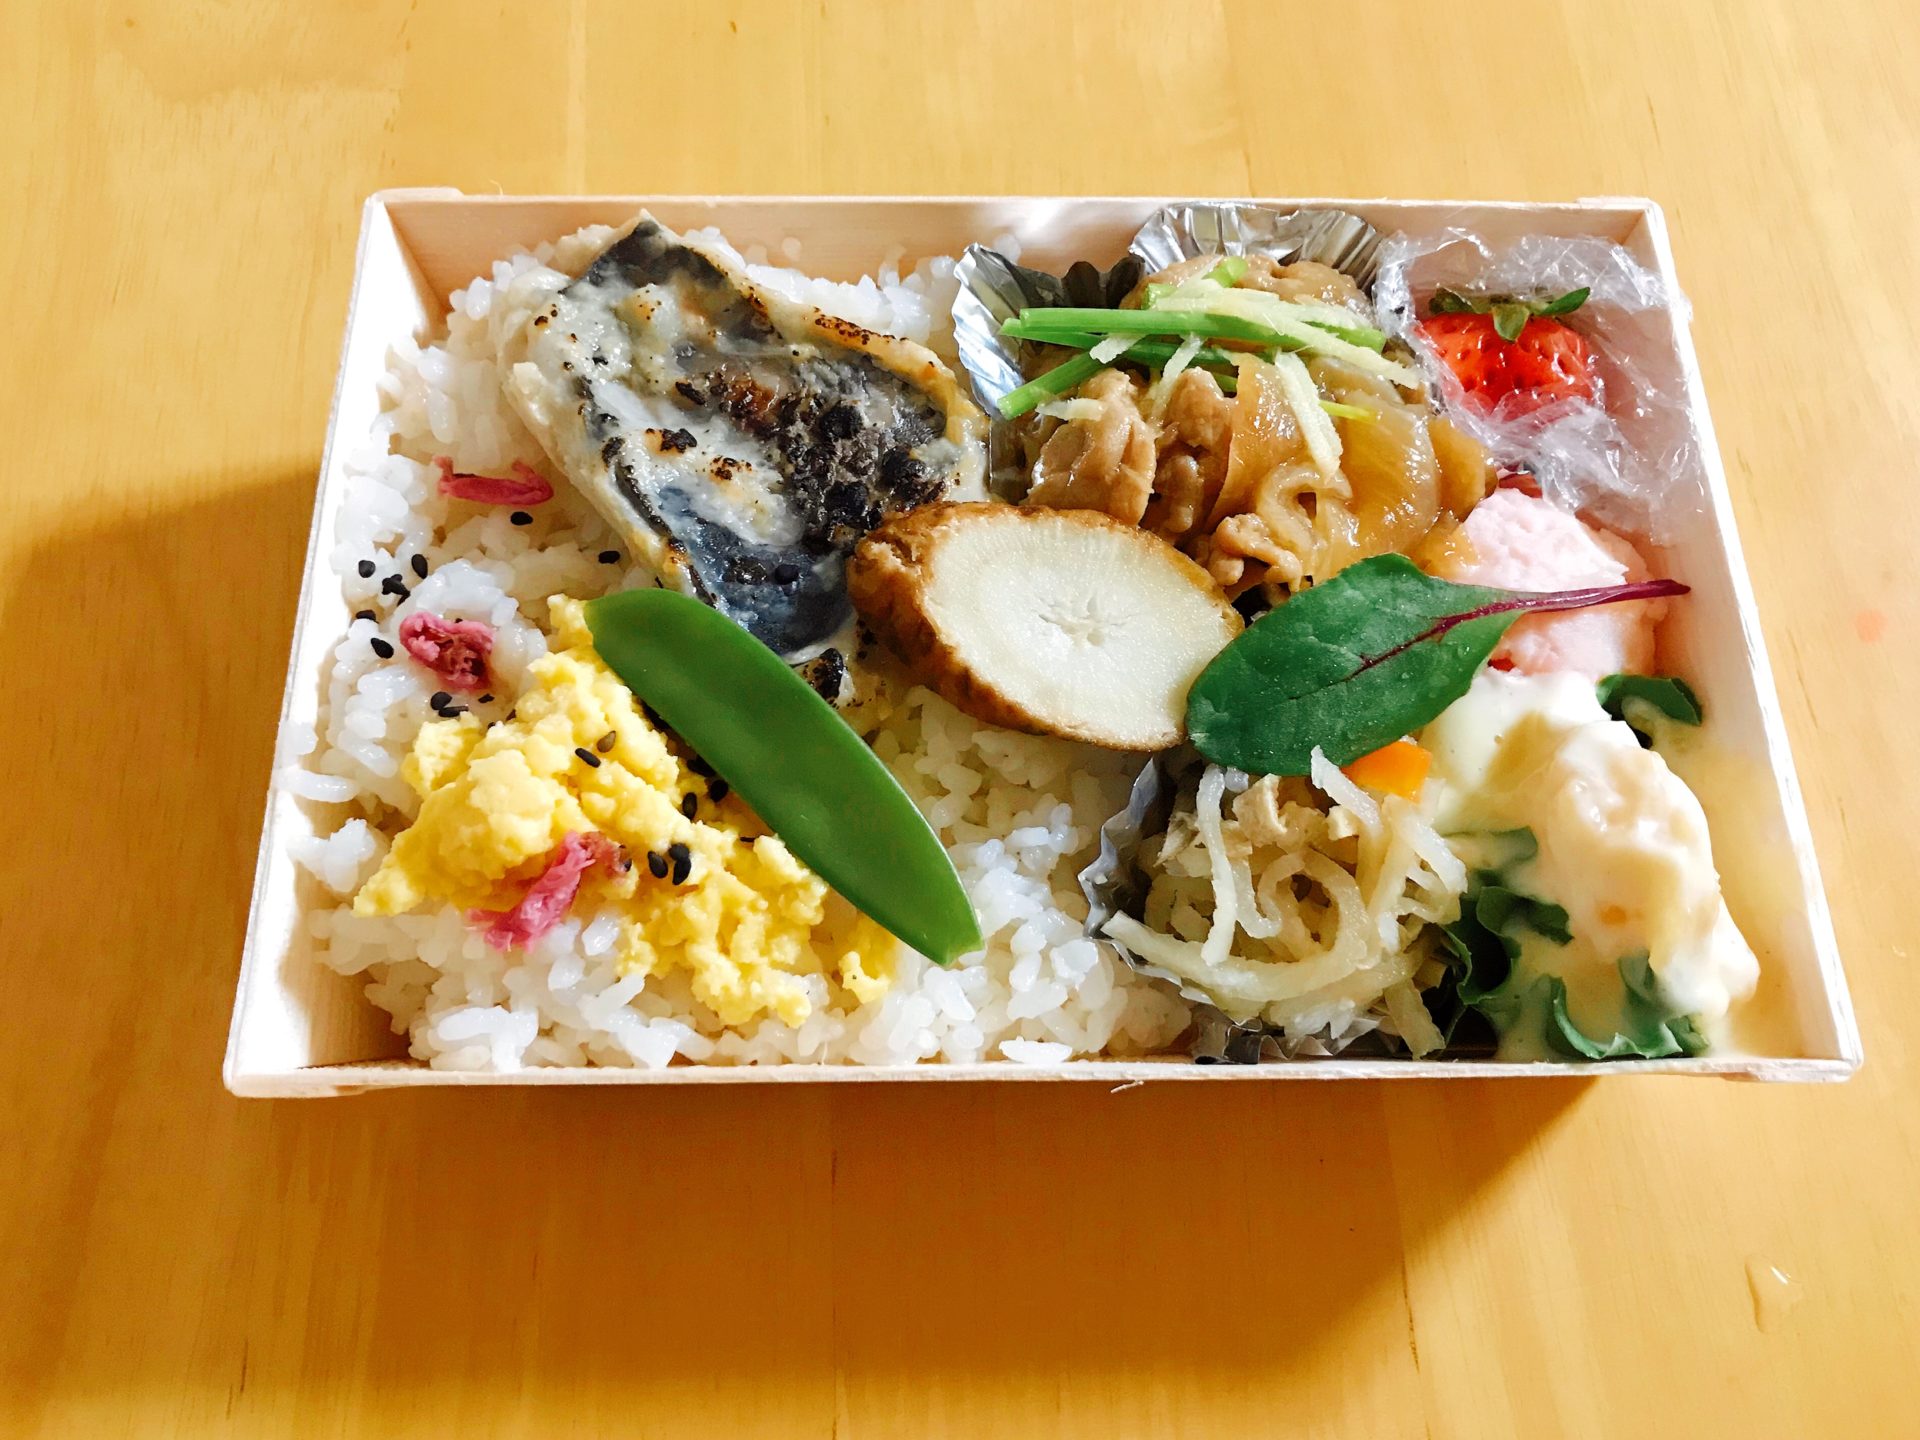 姫路おこもりグルメ コメハナのお弁当 素材箱 姫路市のローカル情報サイト 裏観光情報も